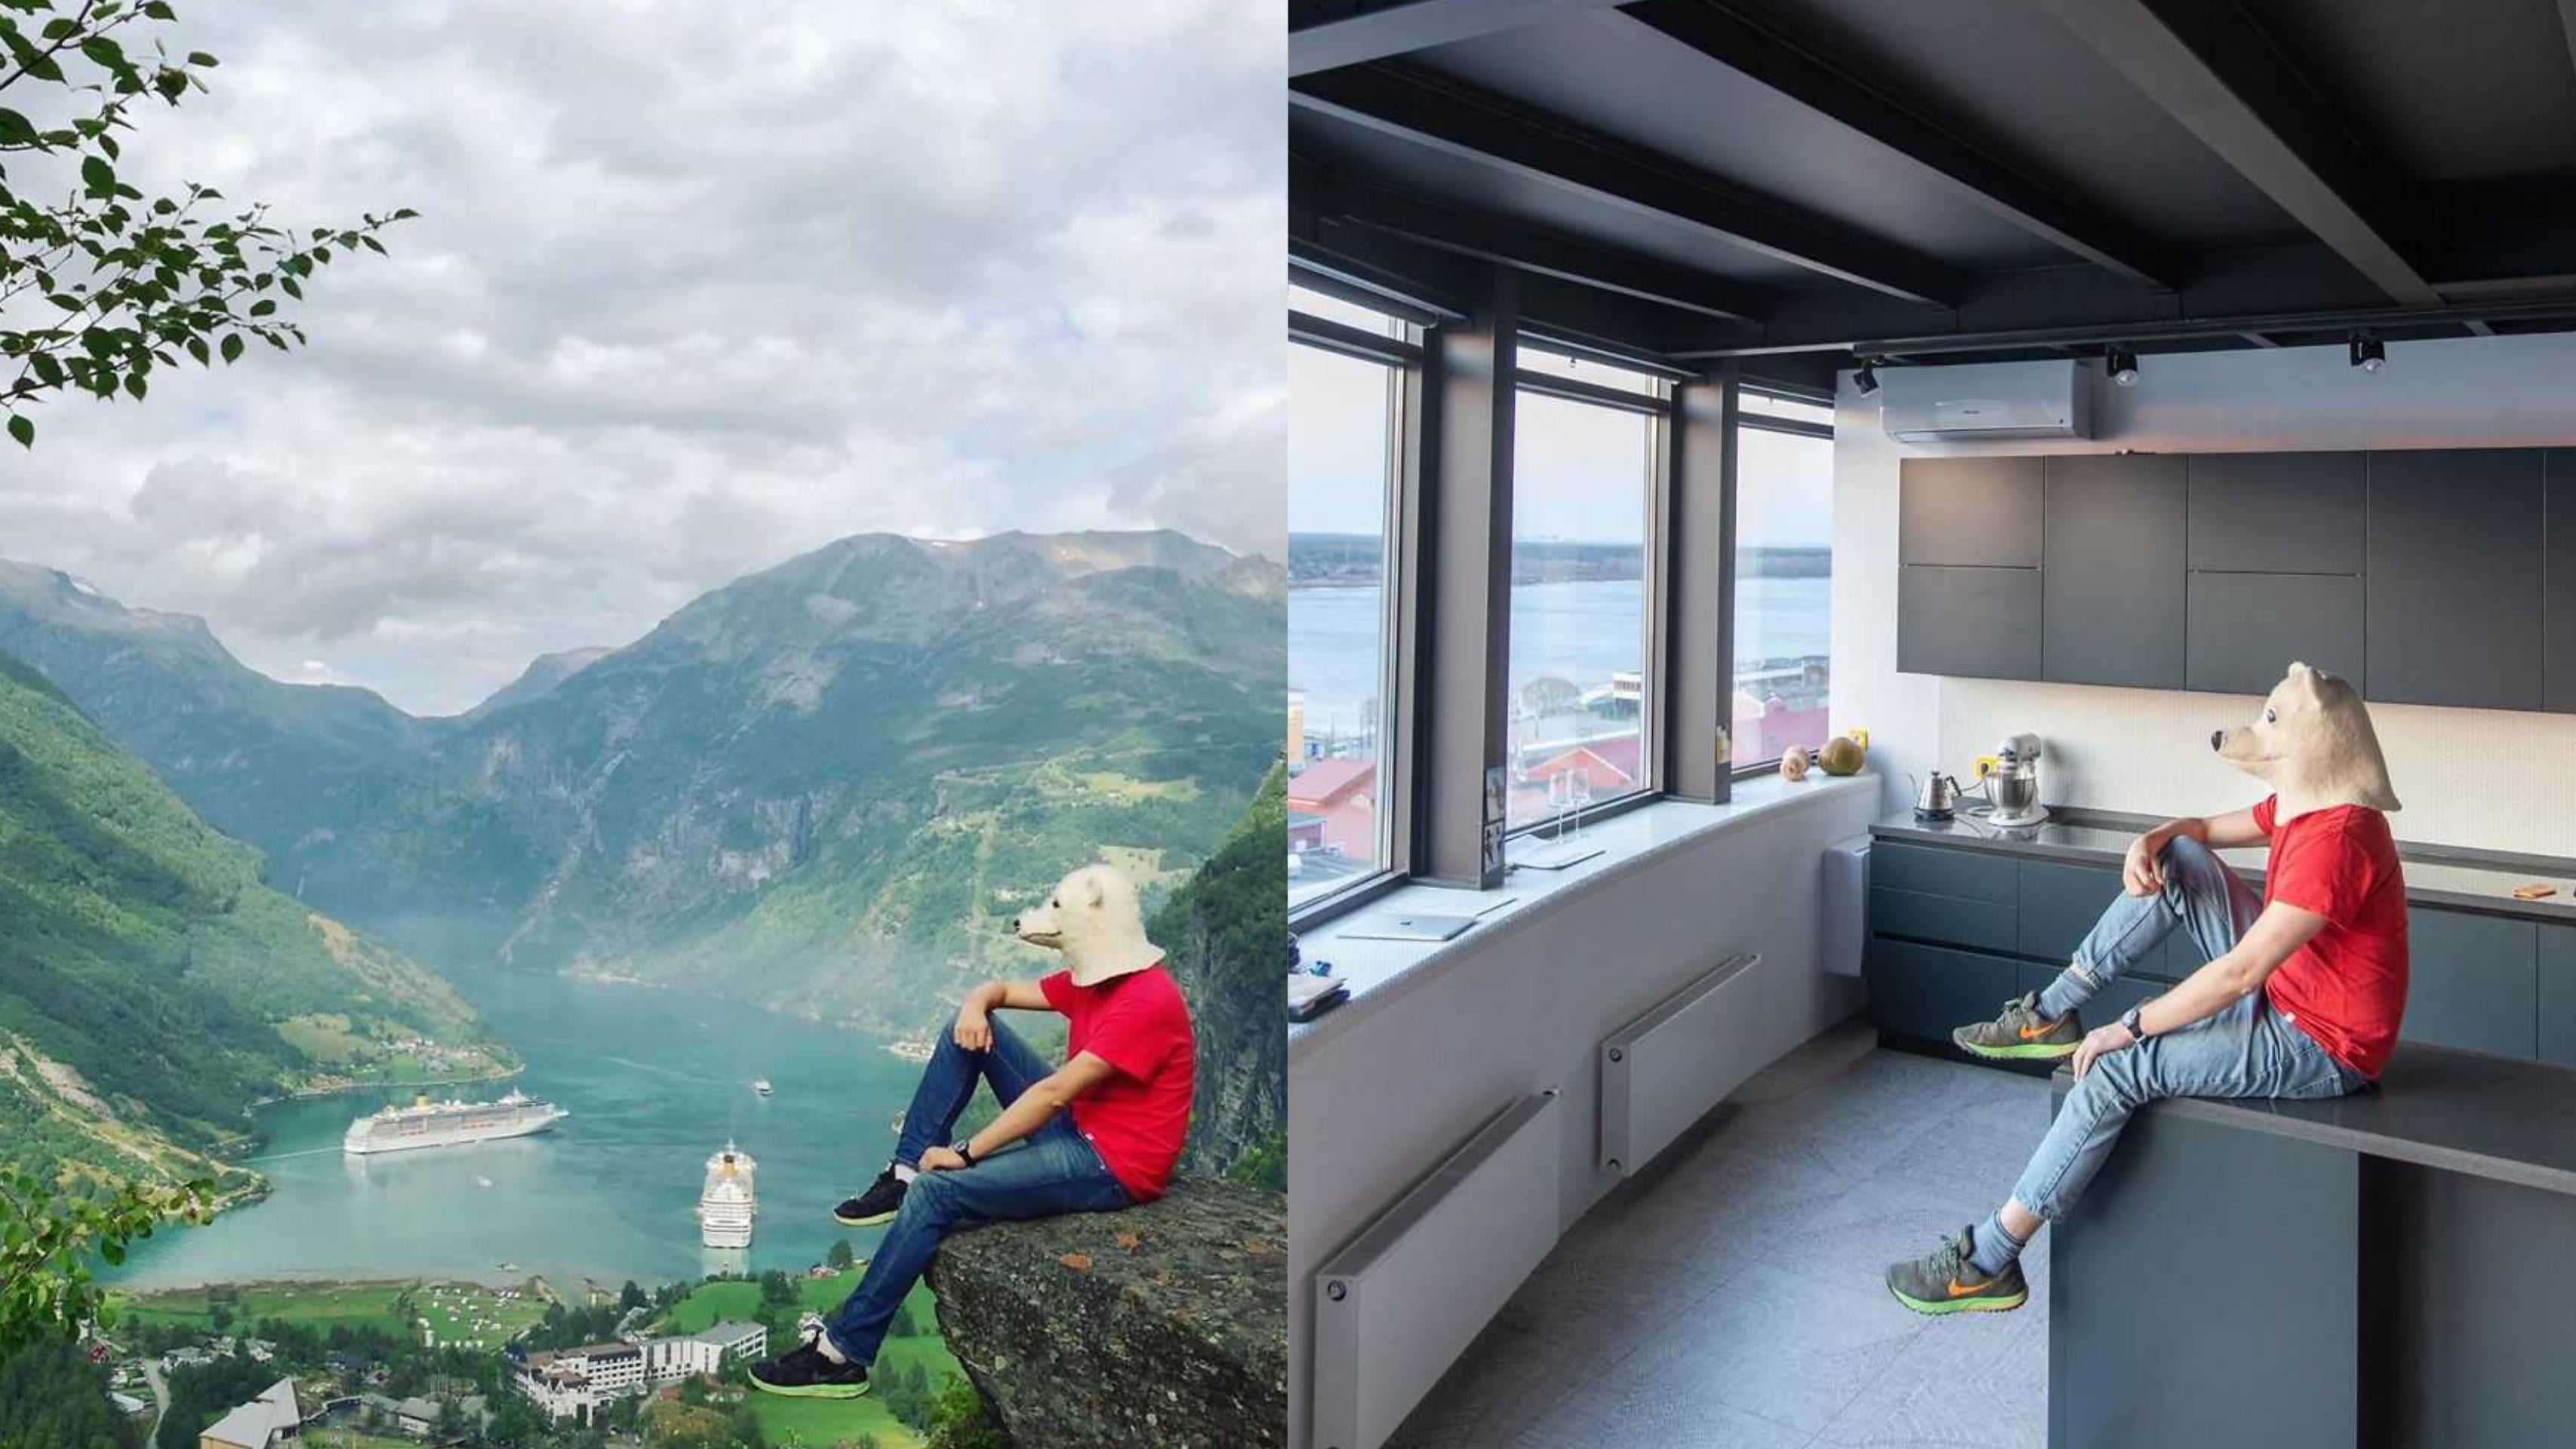 Traveler ini reka ulang foto liburannya dari rumah, hasilnya keren